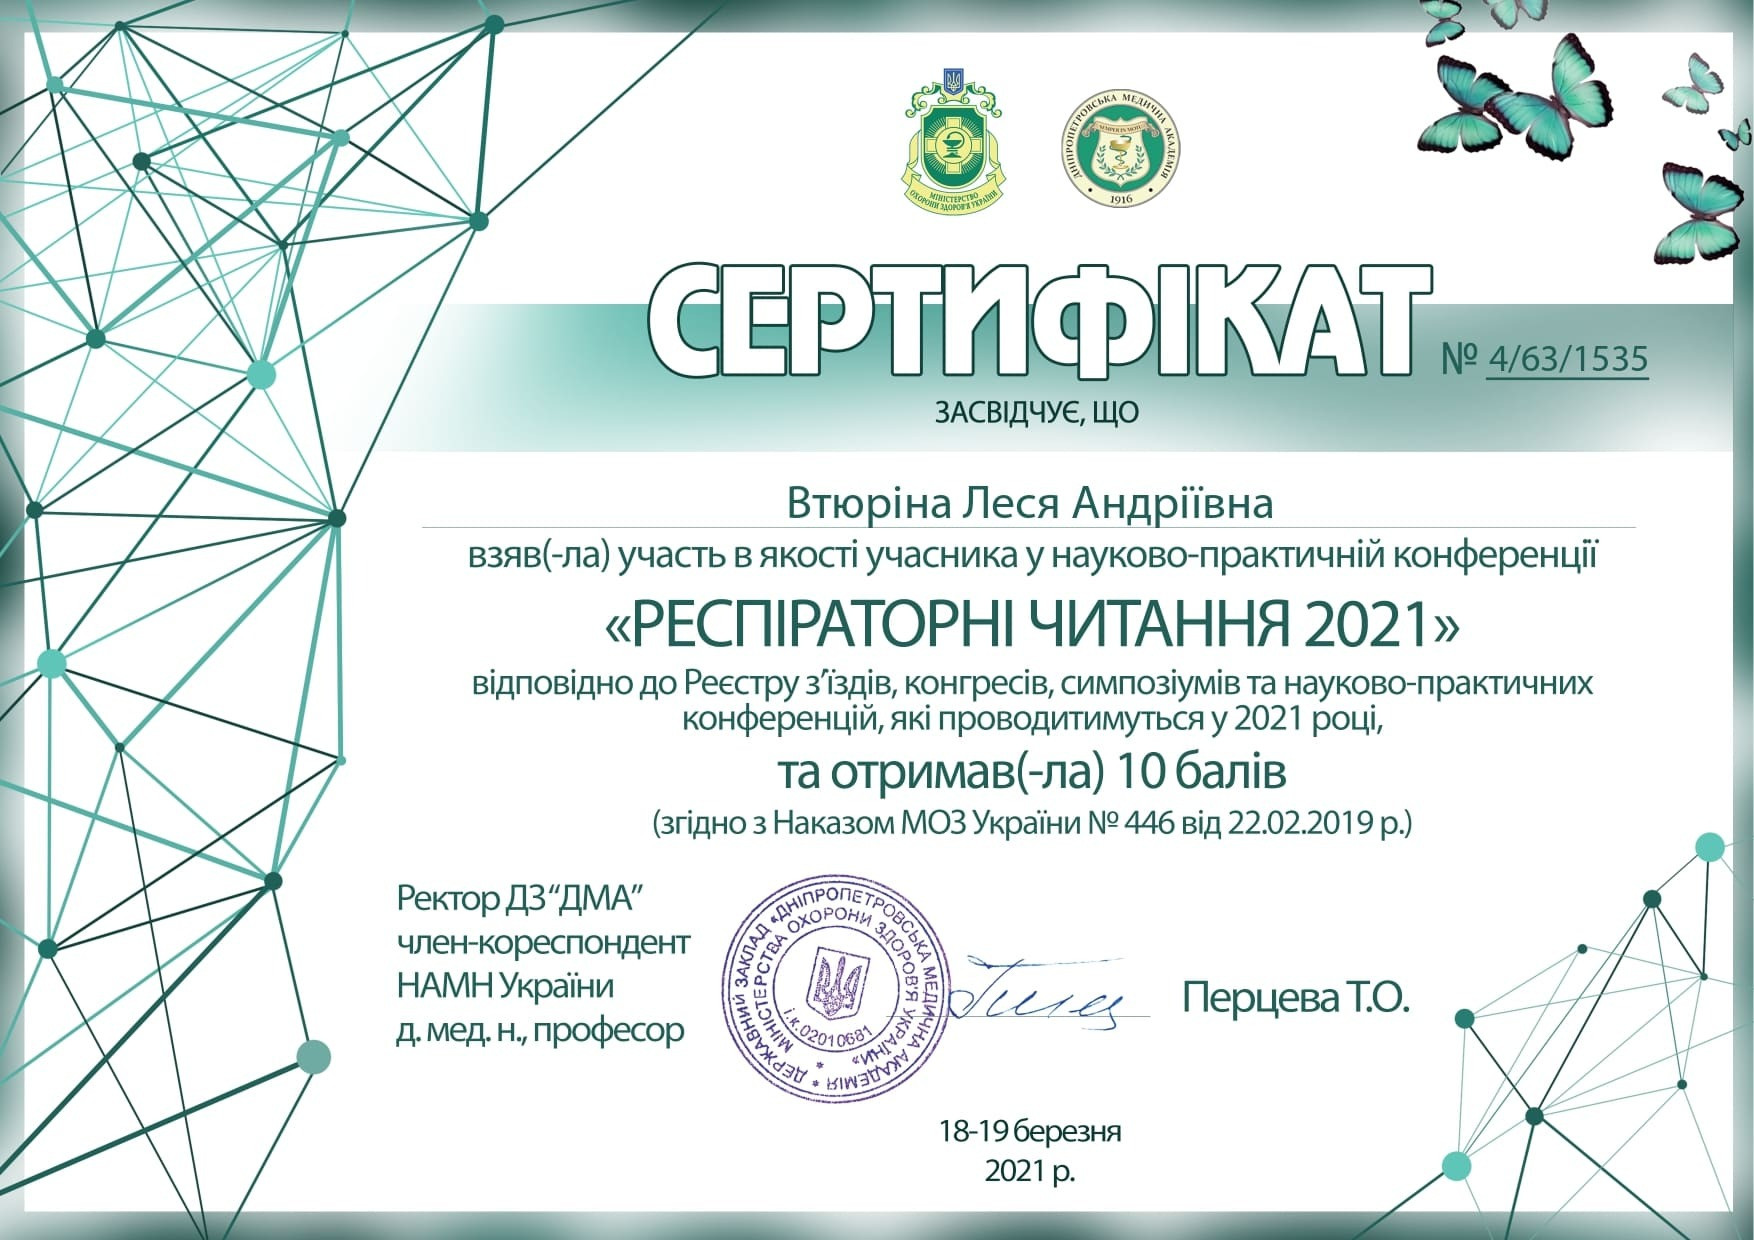 Сертификат об участи в научно-практической конференции